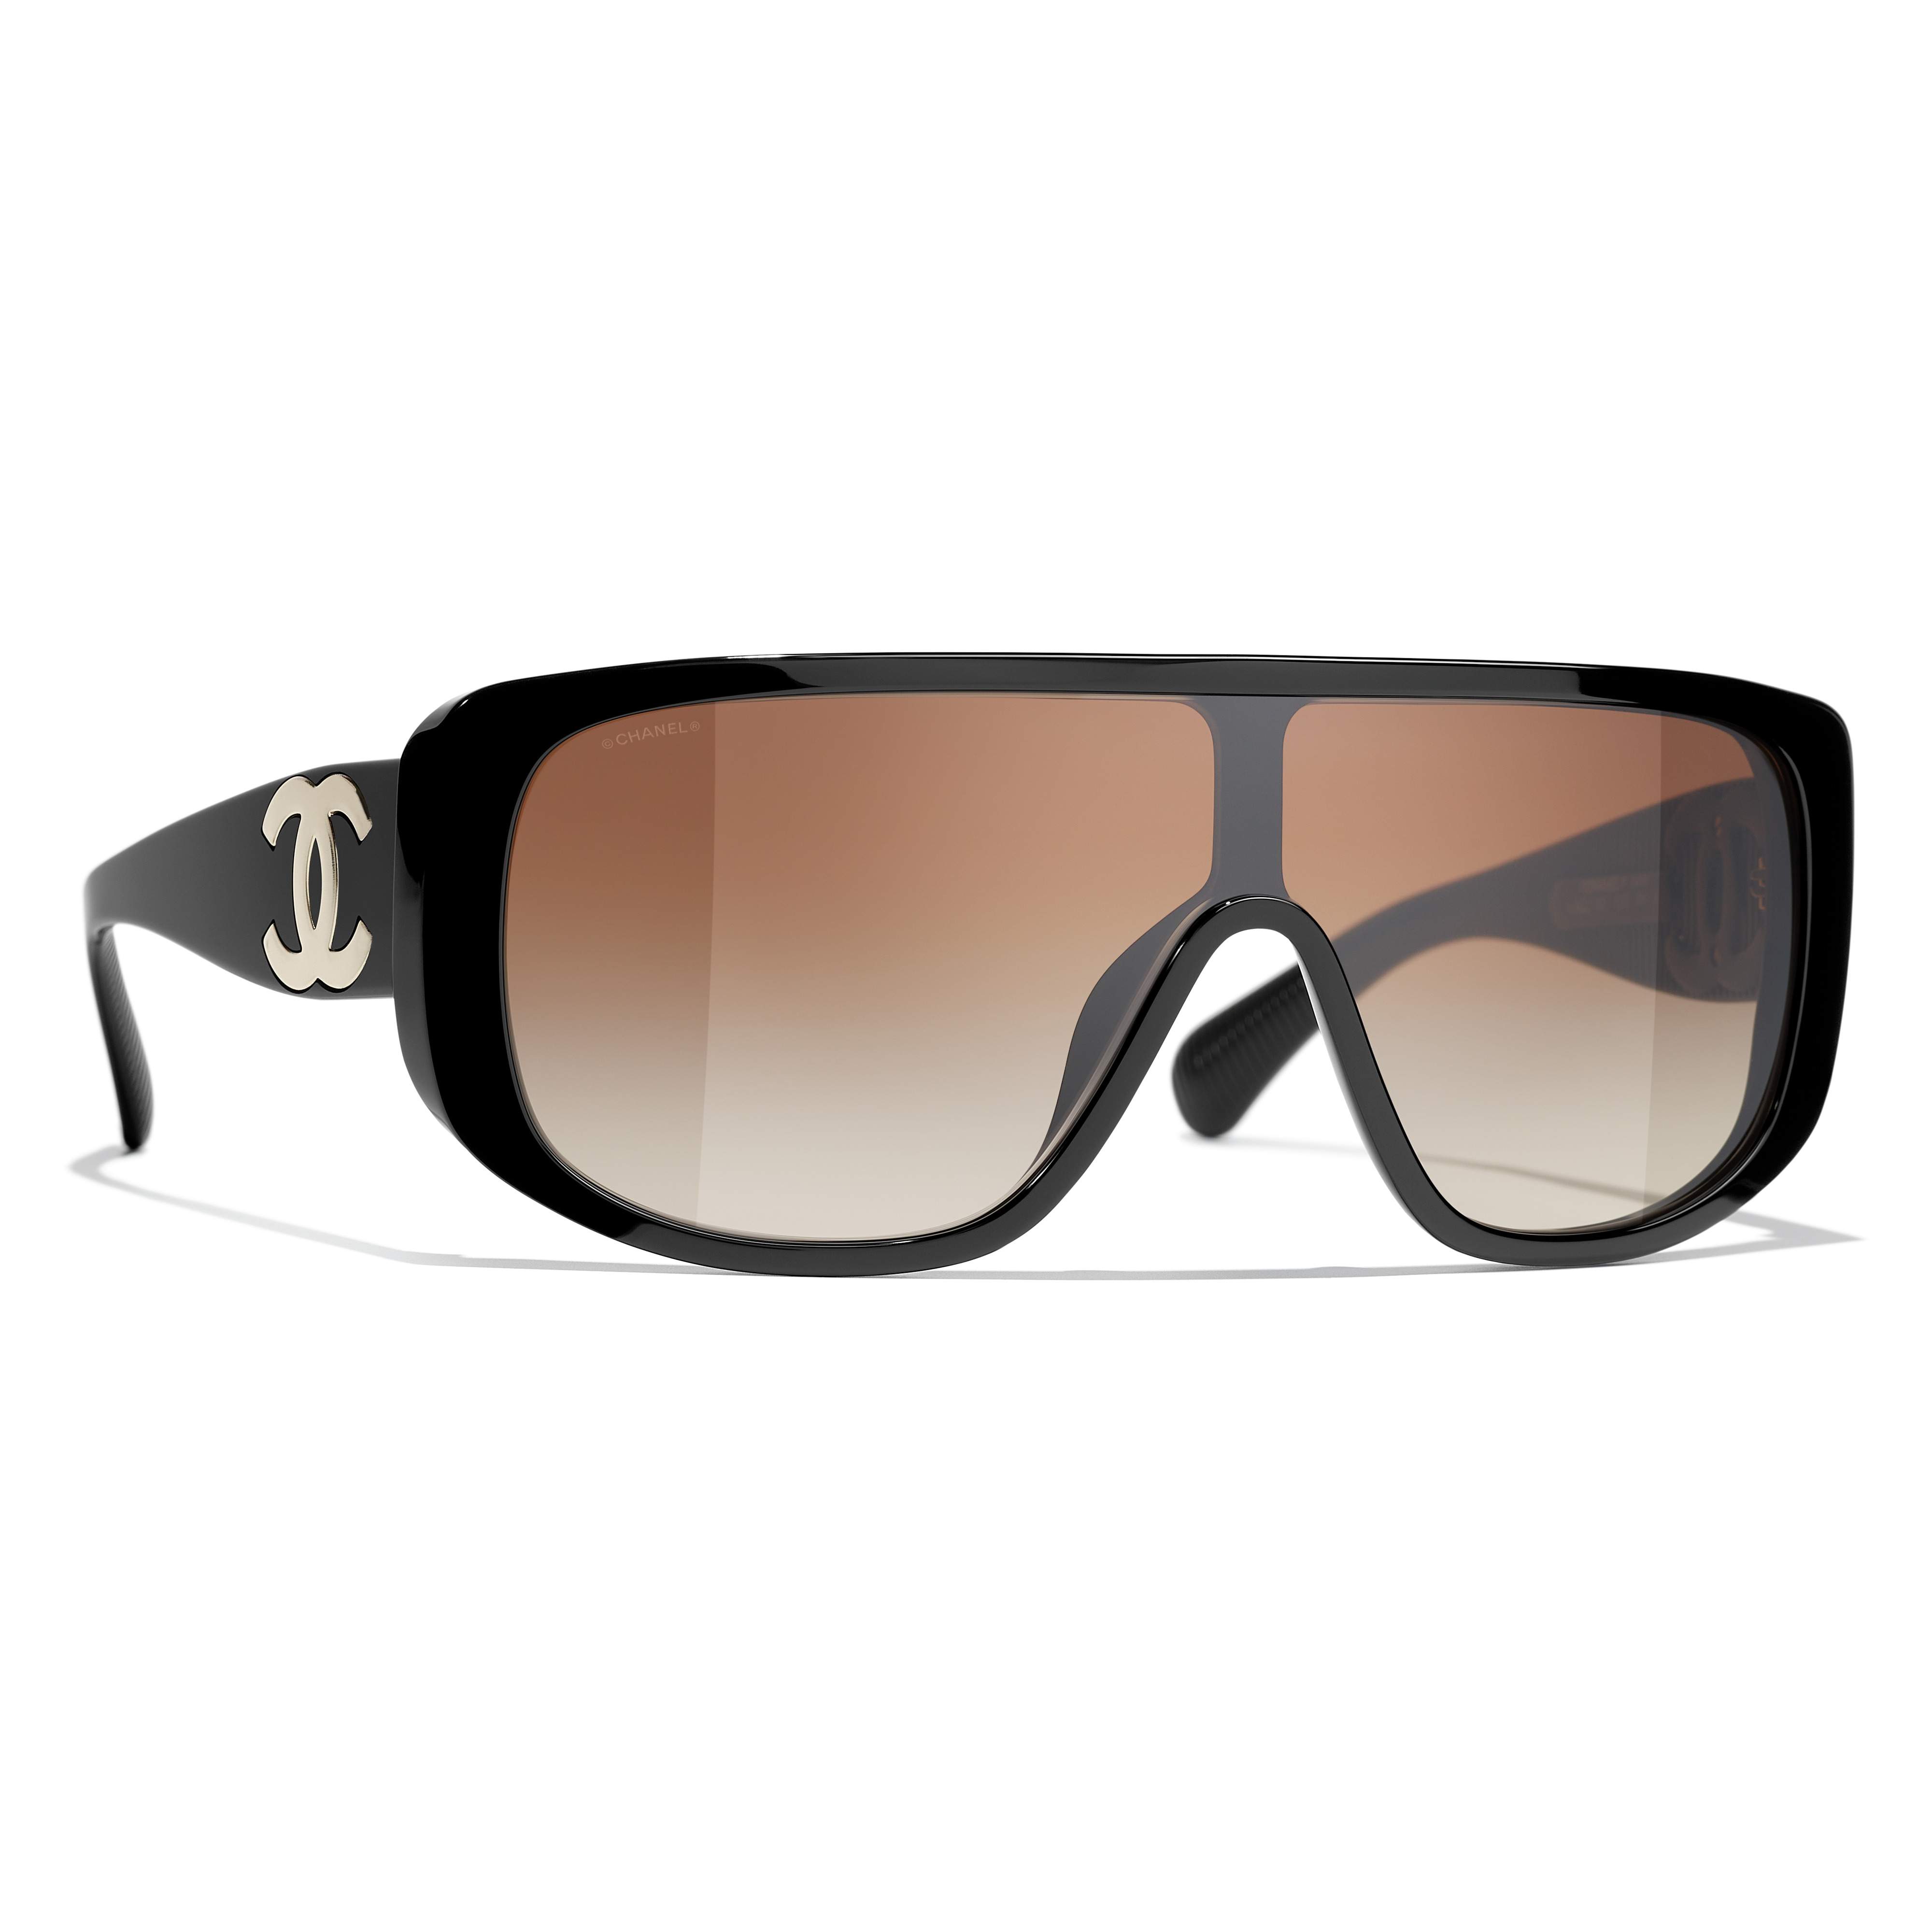 Sunglasses CHANEL CH5495 C622/S5 Black in stock | Price 237,50 